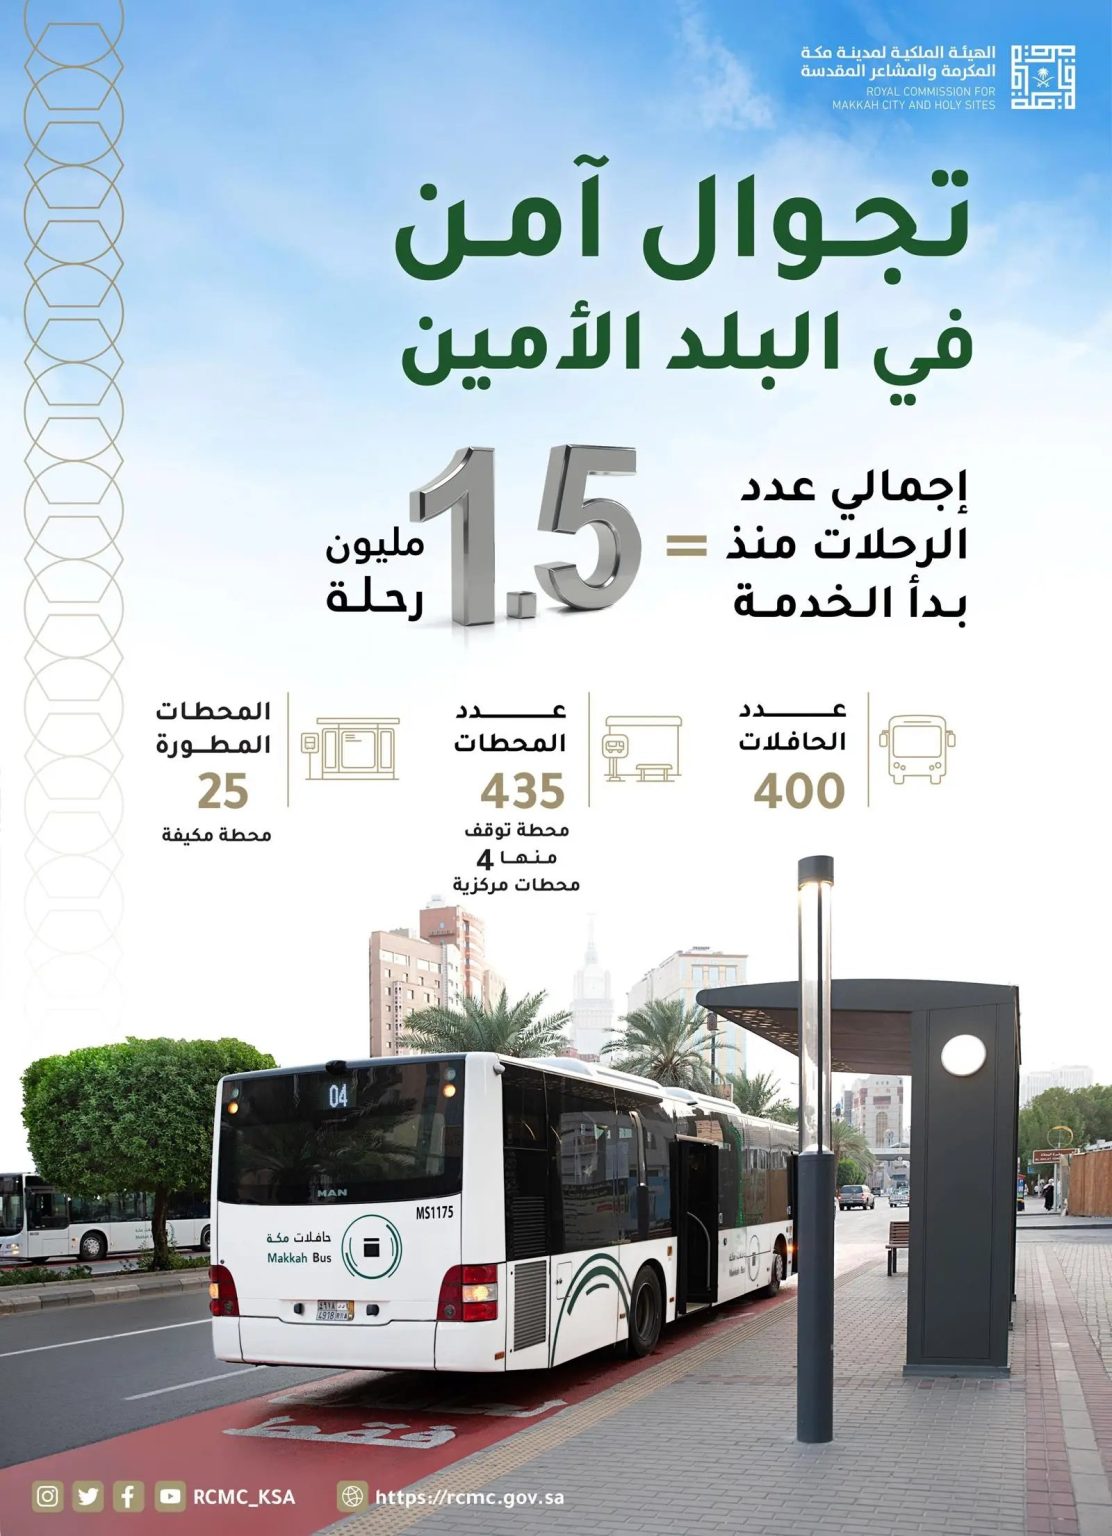 “حافلات مكة” تحقق مليون ونصف رحلة في الفترة التجريبية 2